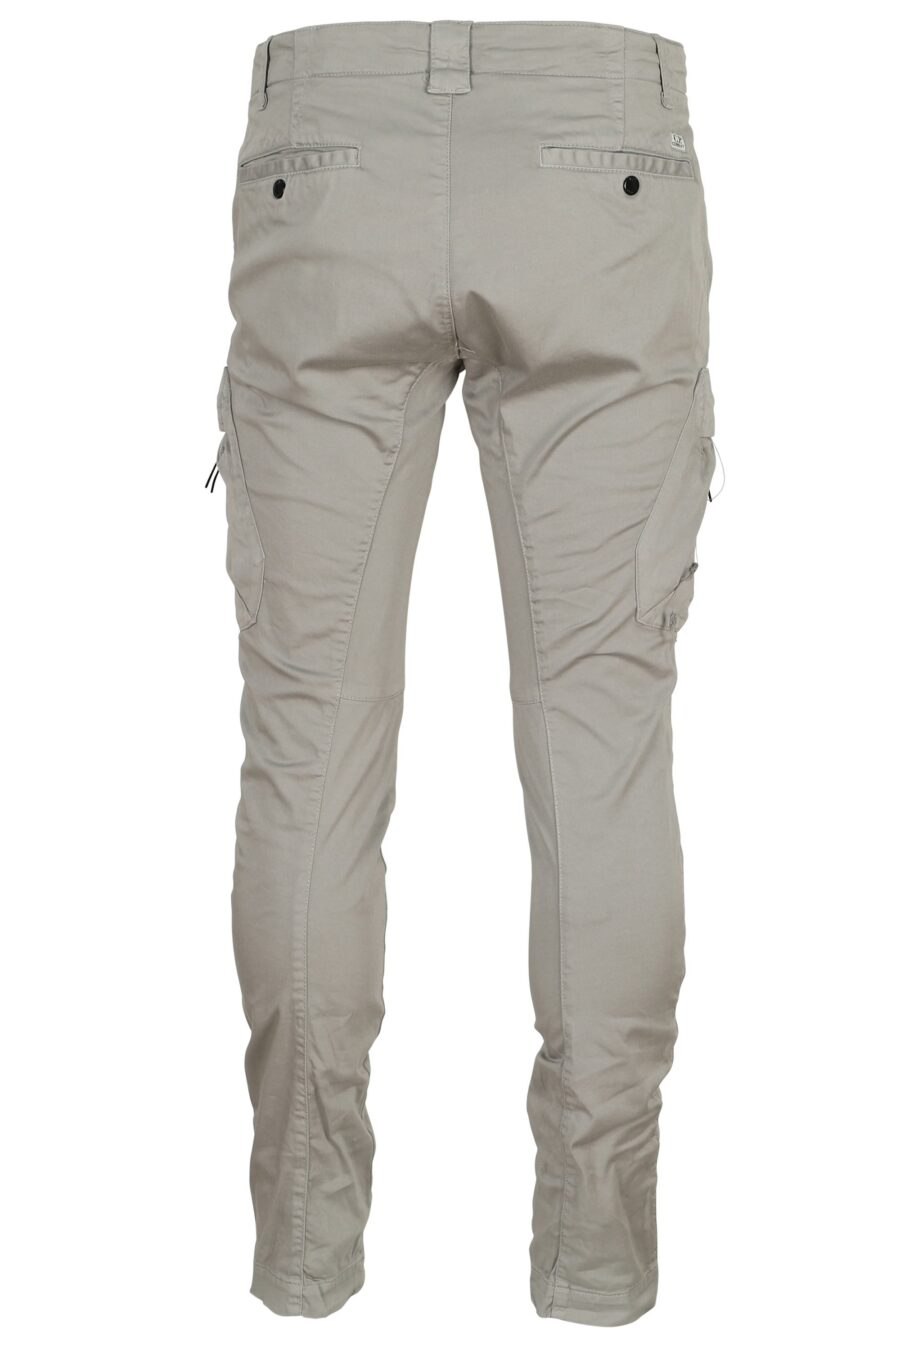 Pantalón gris estilo cargo con logo lente - 7620943722895 2